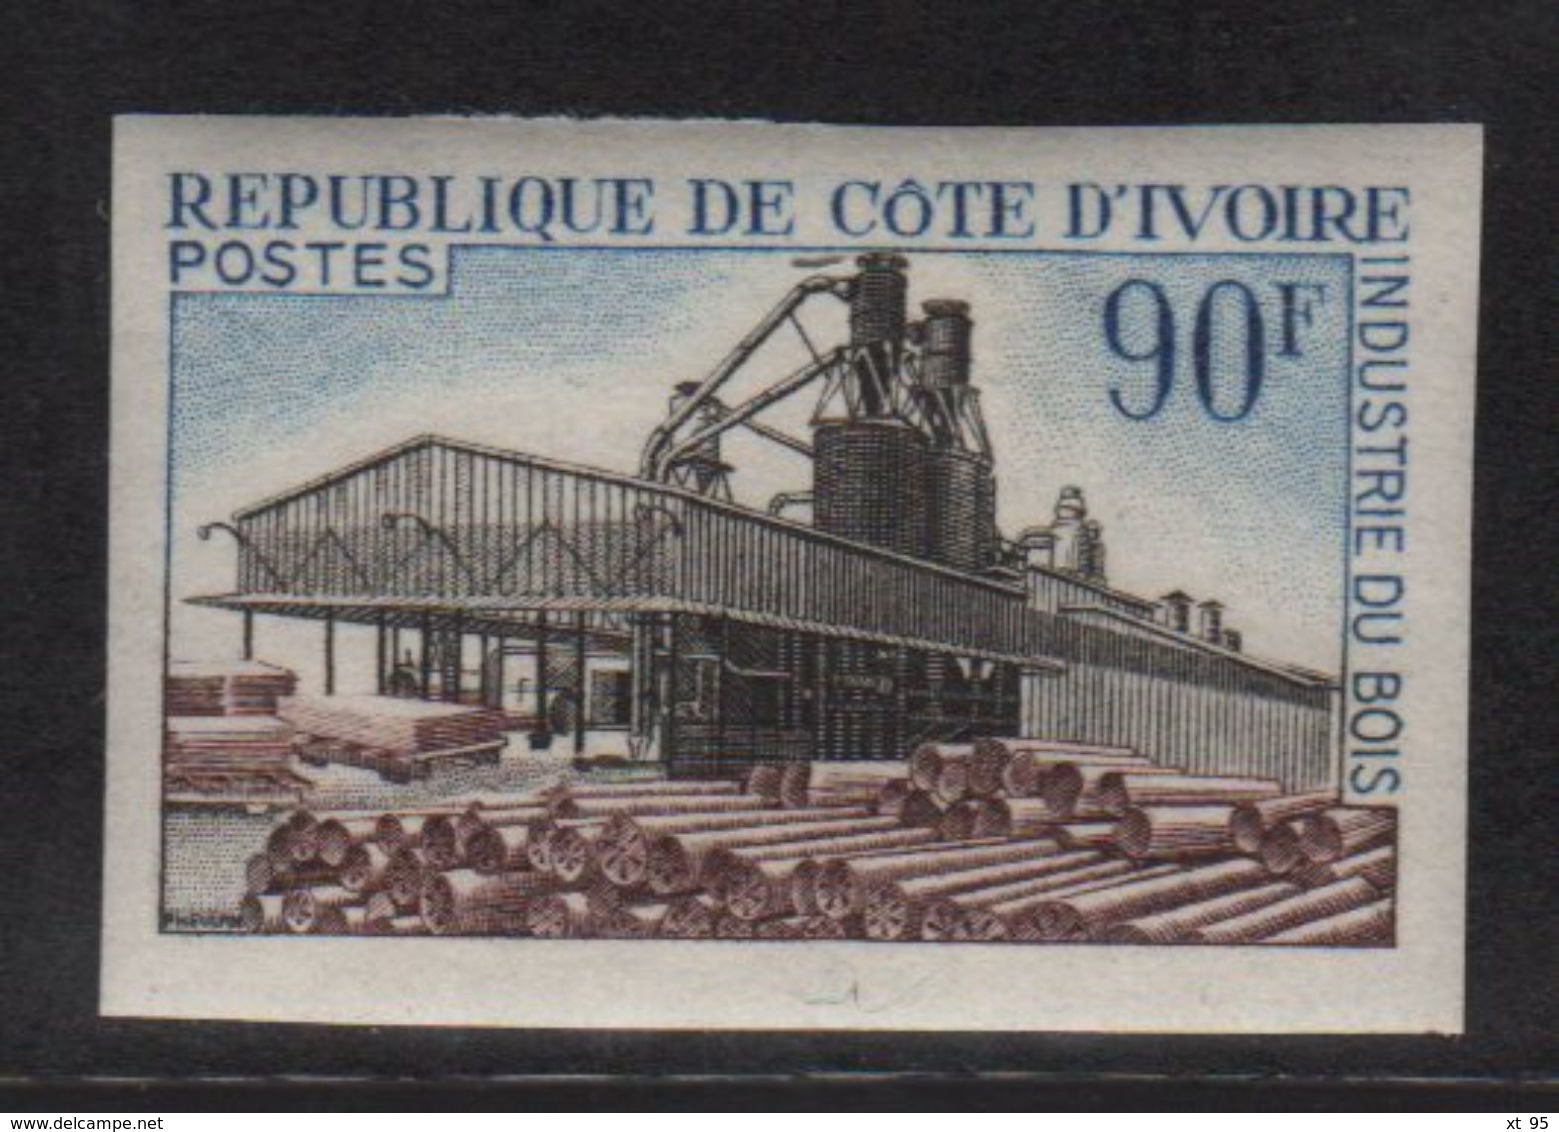 Cote D Ivoire - N°276 Non Dentele ** - Industrie Du Bois - Ivory Coast (1960-...)